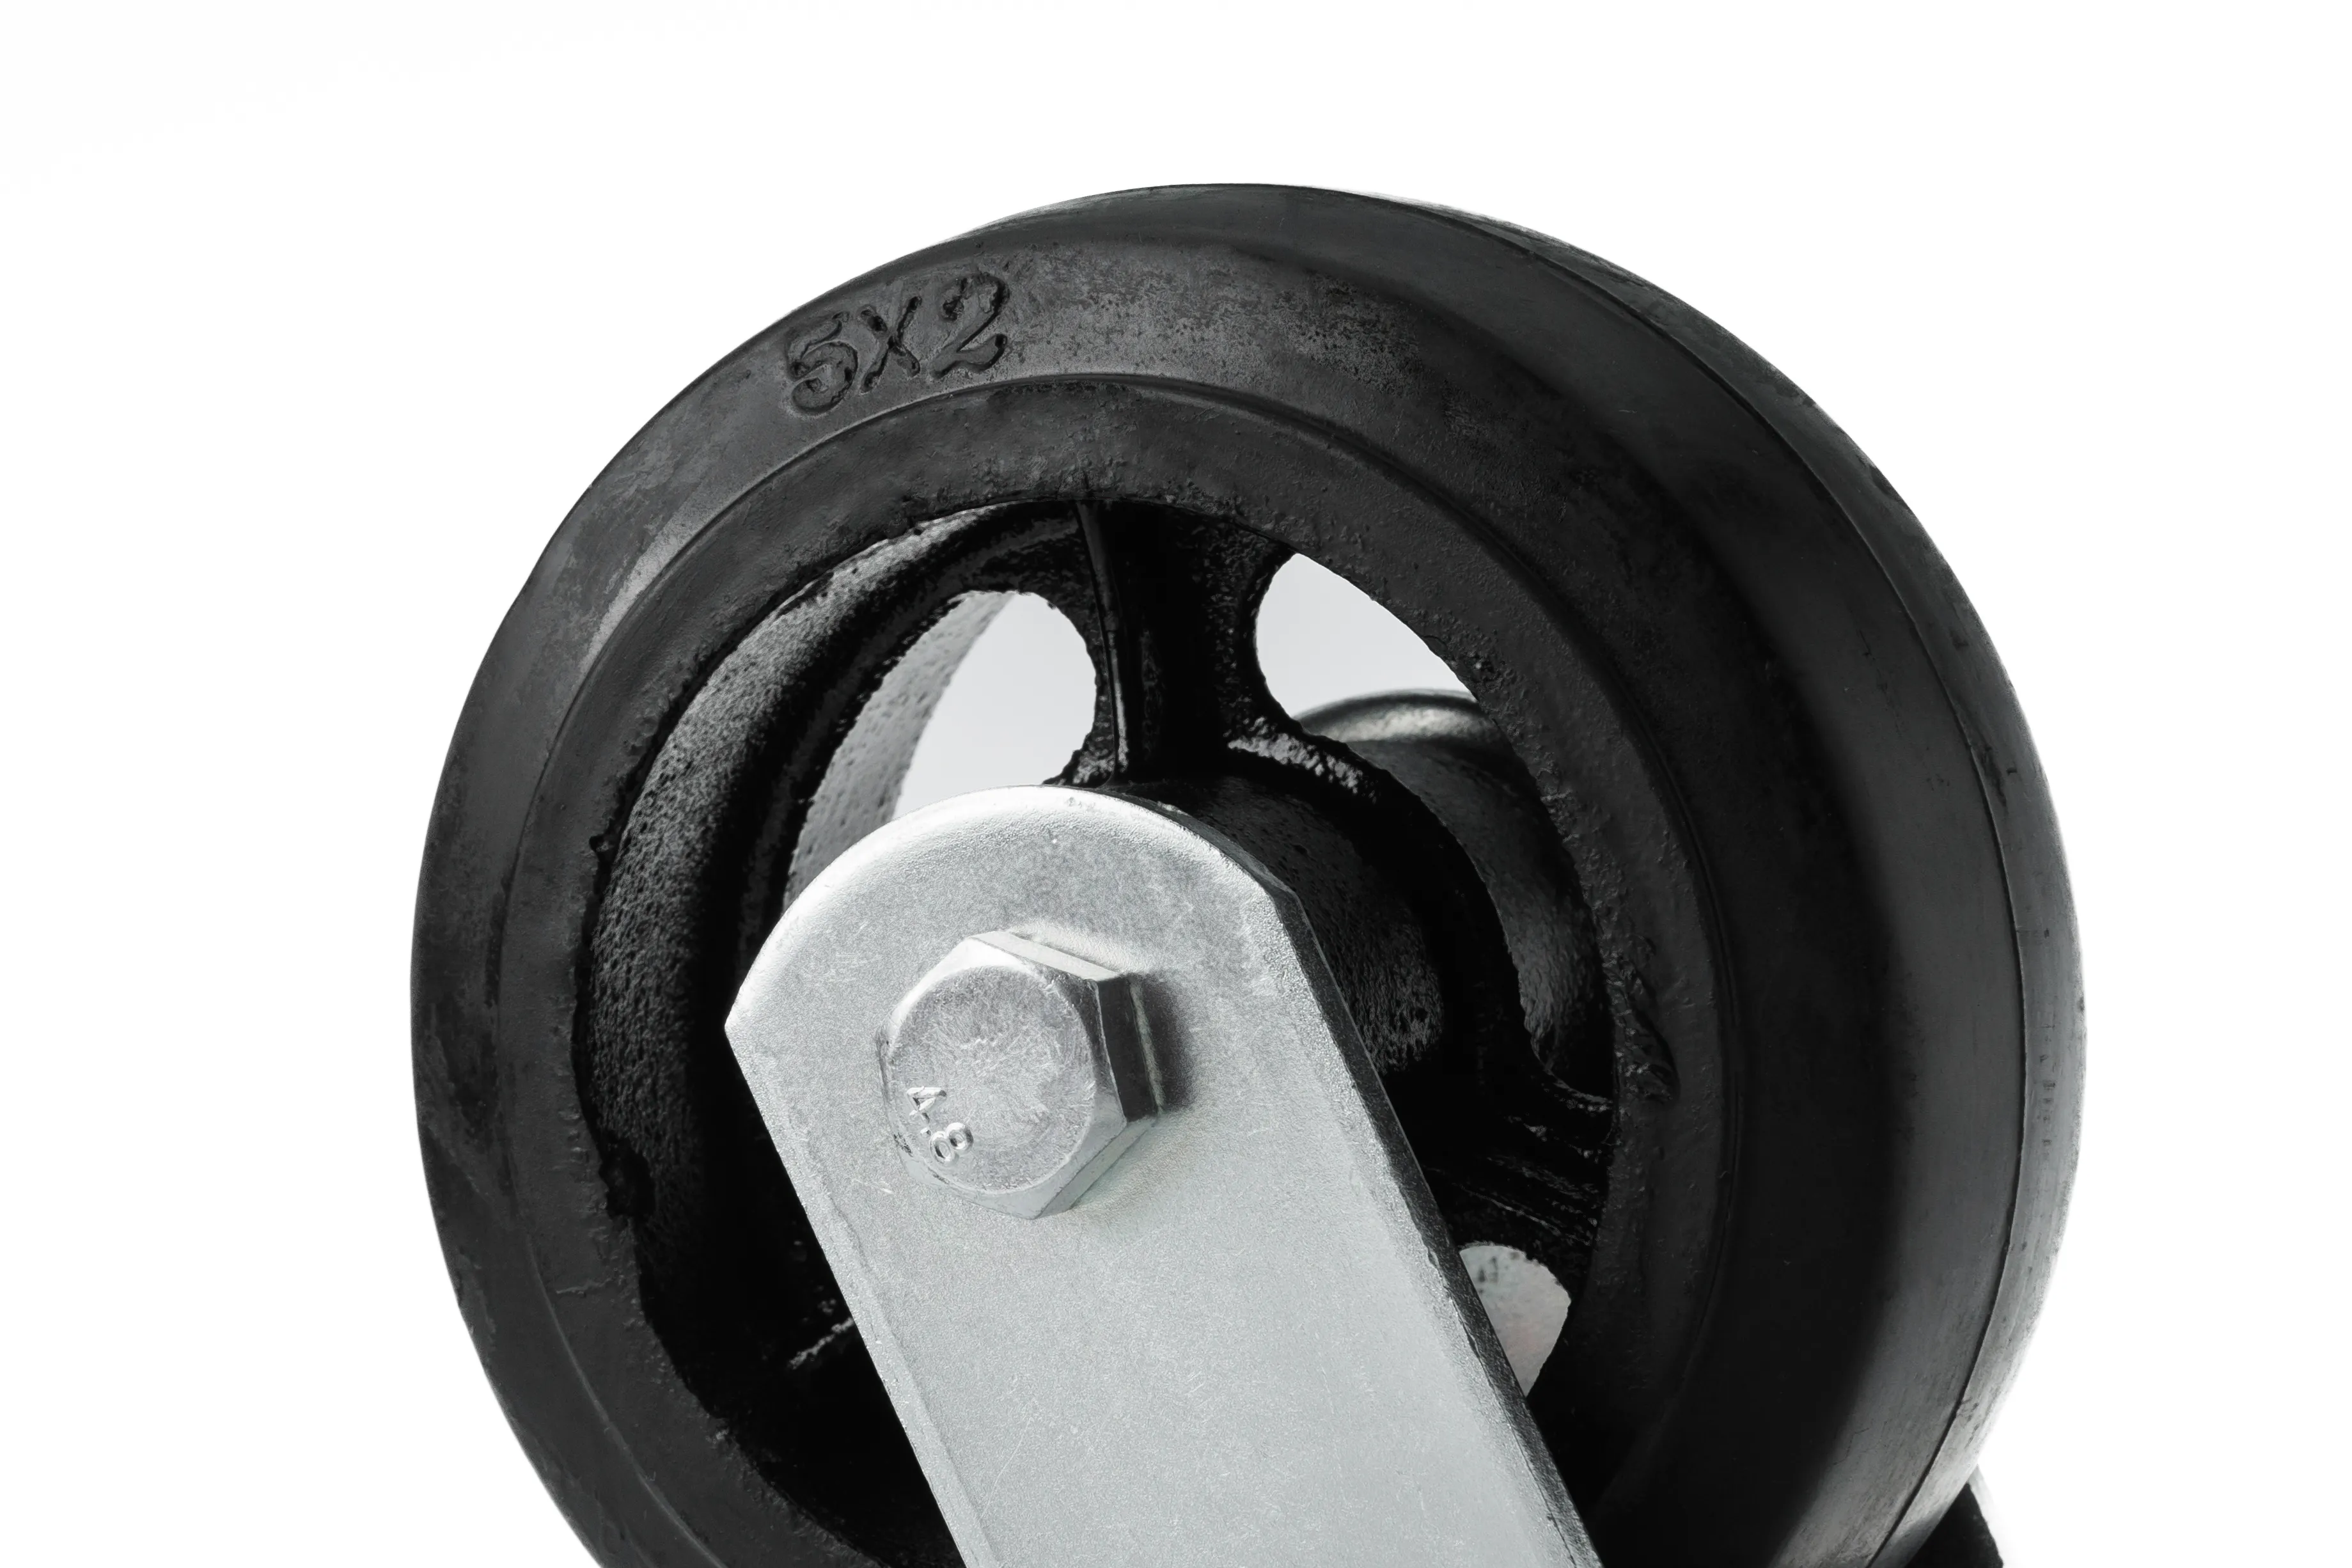 SCD 55 - Большегрузное чугунное колесо 125 мм (поворот., площадка, черн. рез., роликоподш.)